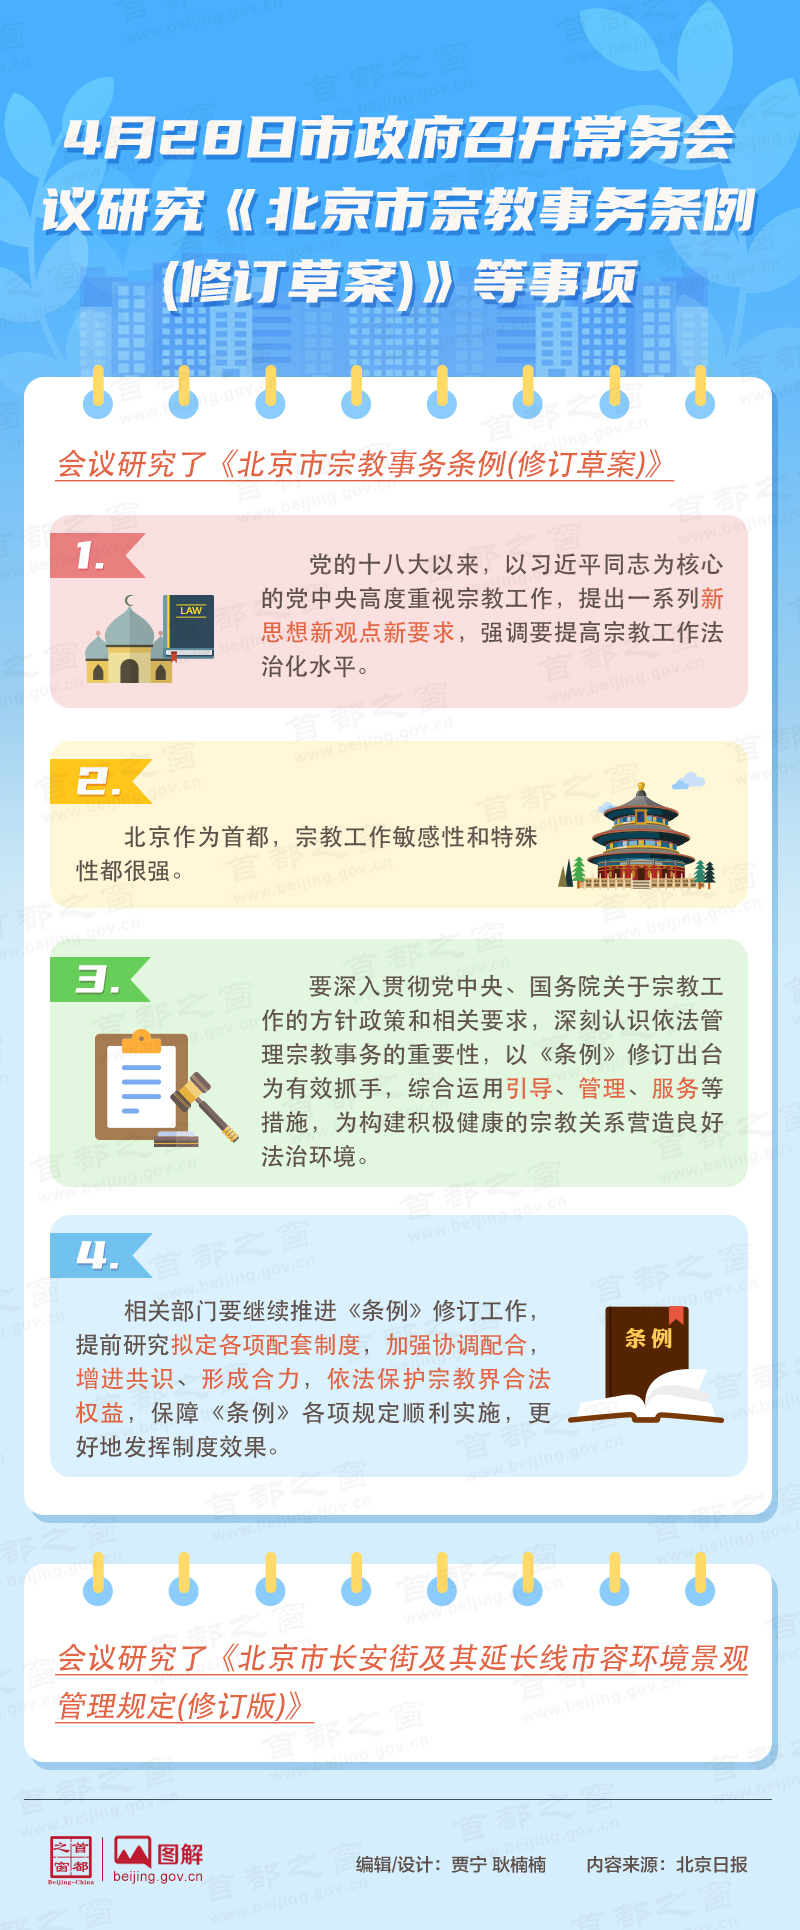 4月28日市政府召开常务会议研究《北京市宗教事务条例(修订草案)》等事项